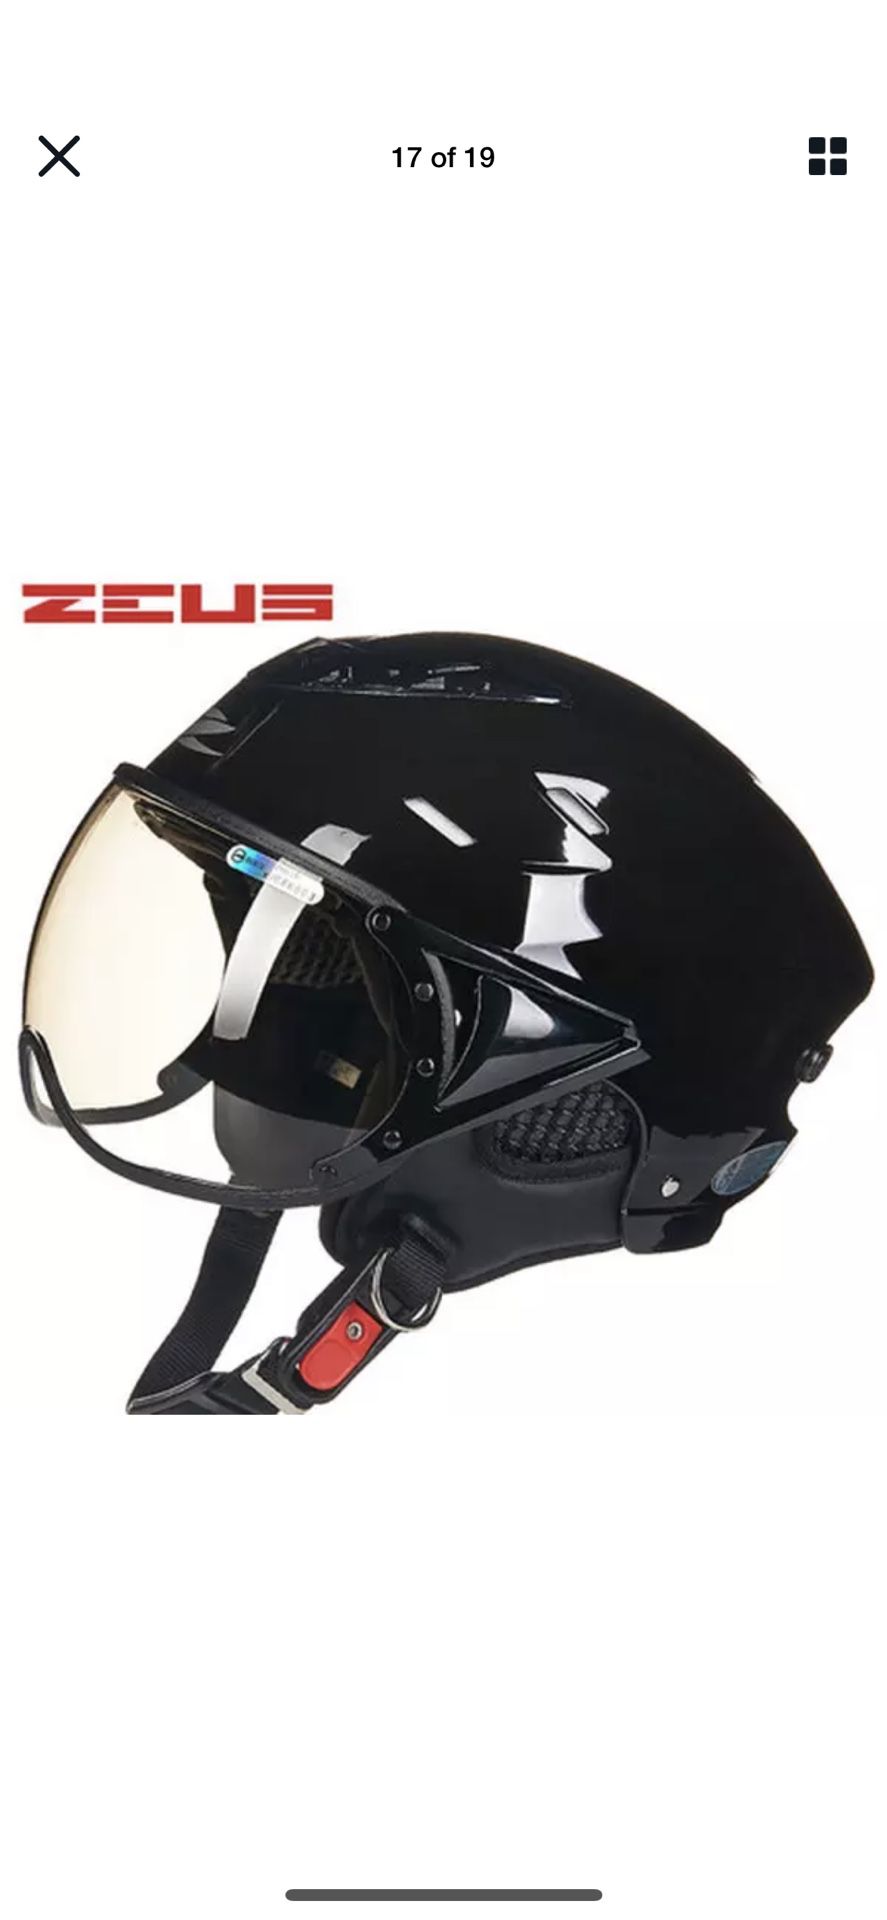 ZEUS Half Face Motorcycle Helmet Electric Bike Scooter Motorbike Helmets ZS-125B